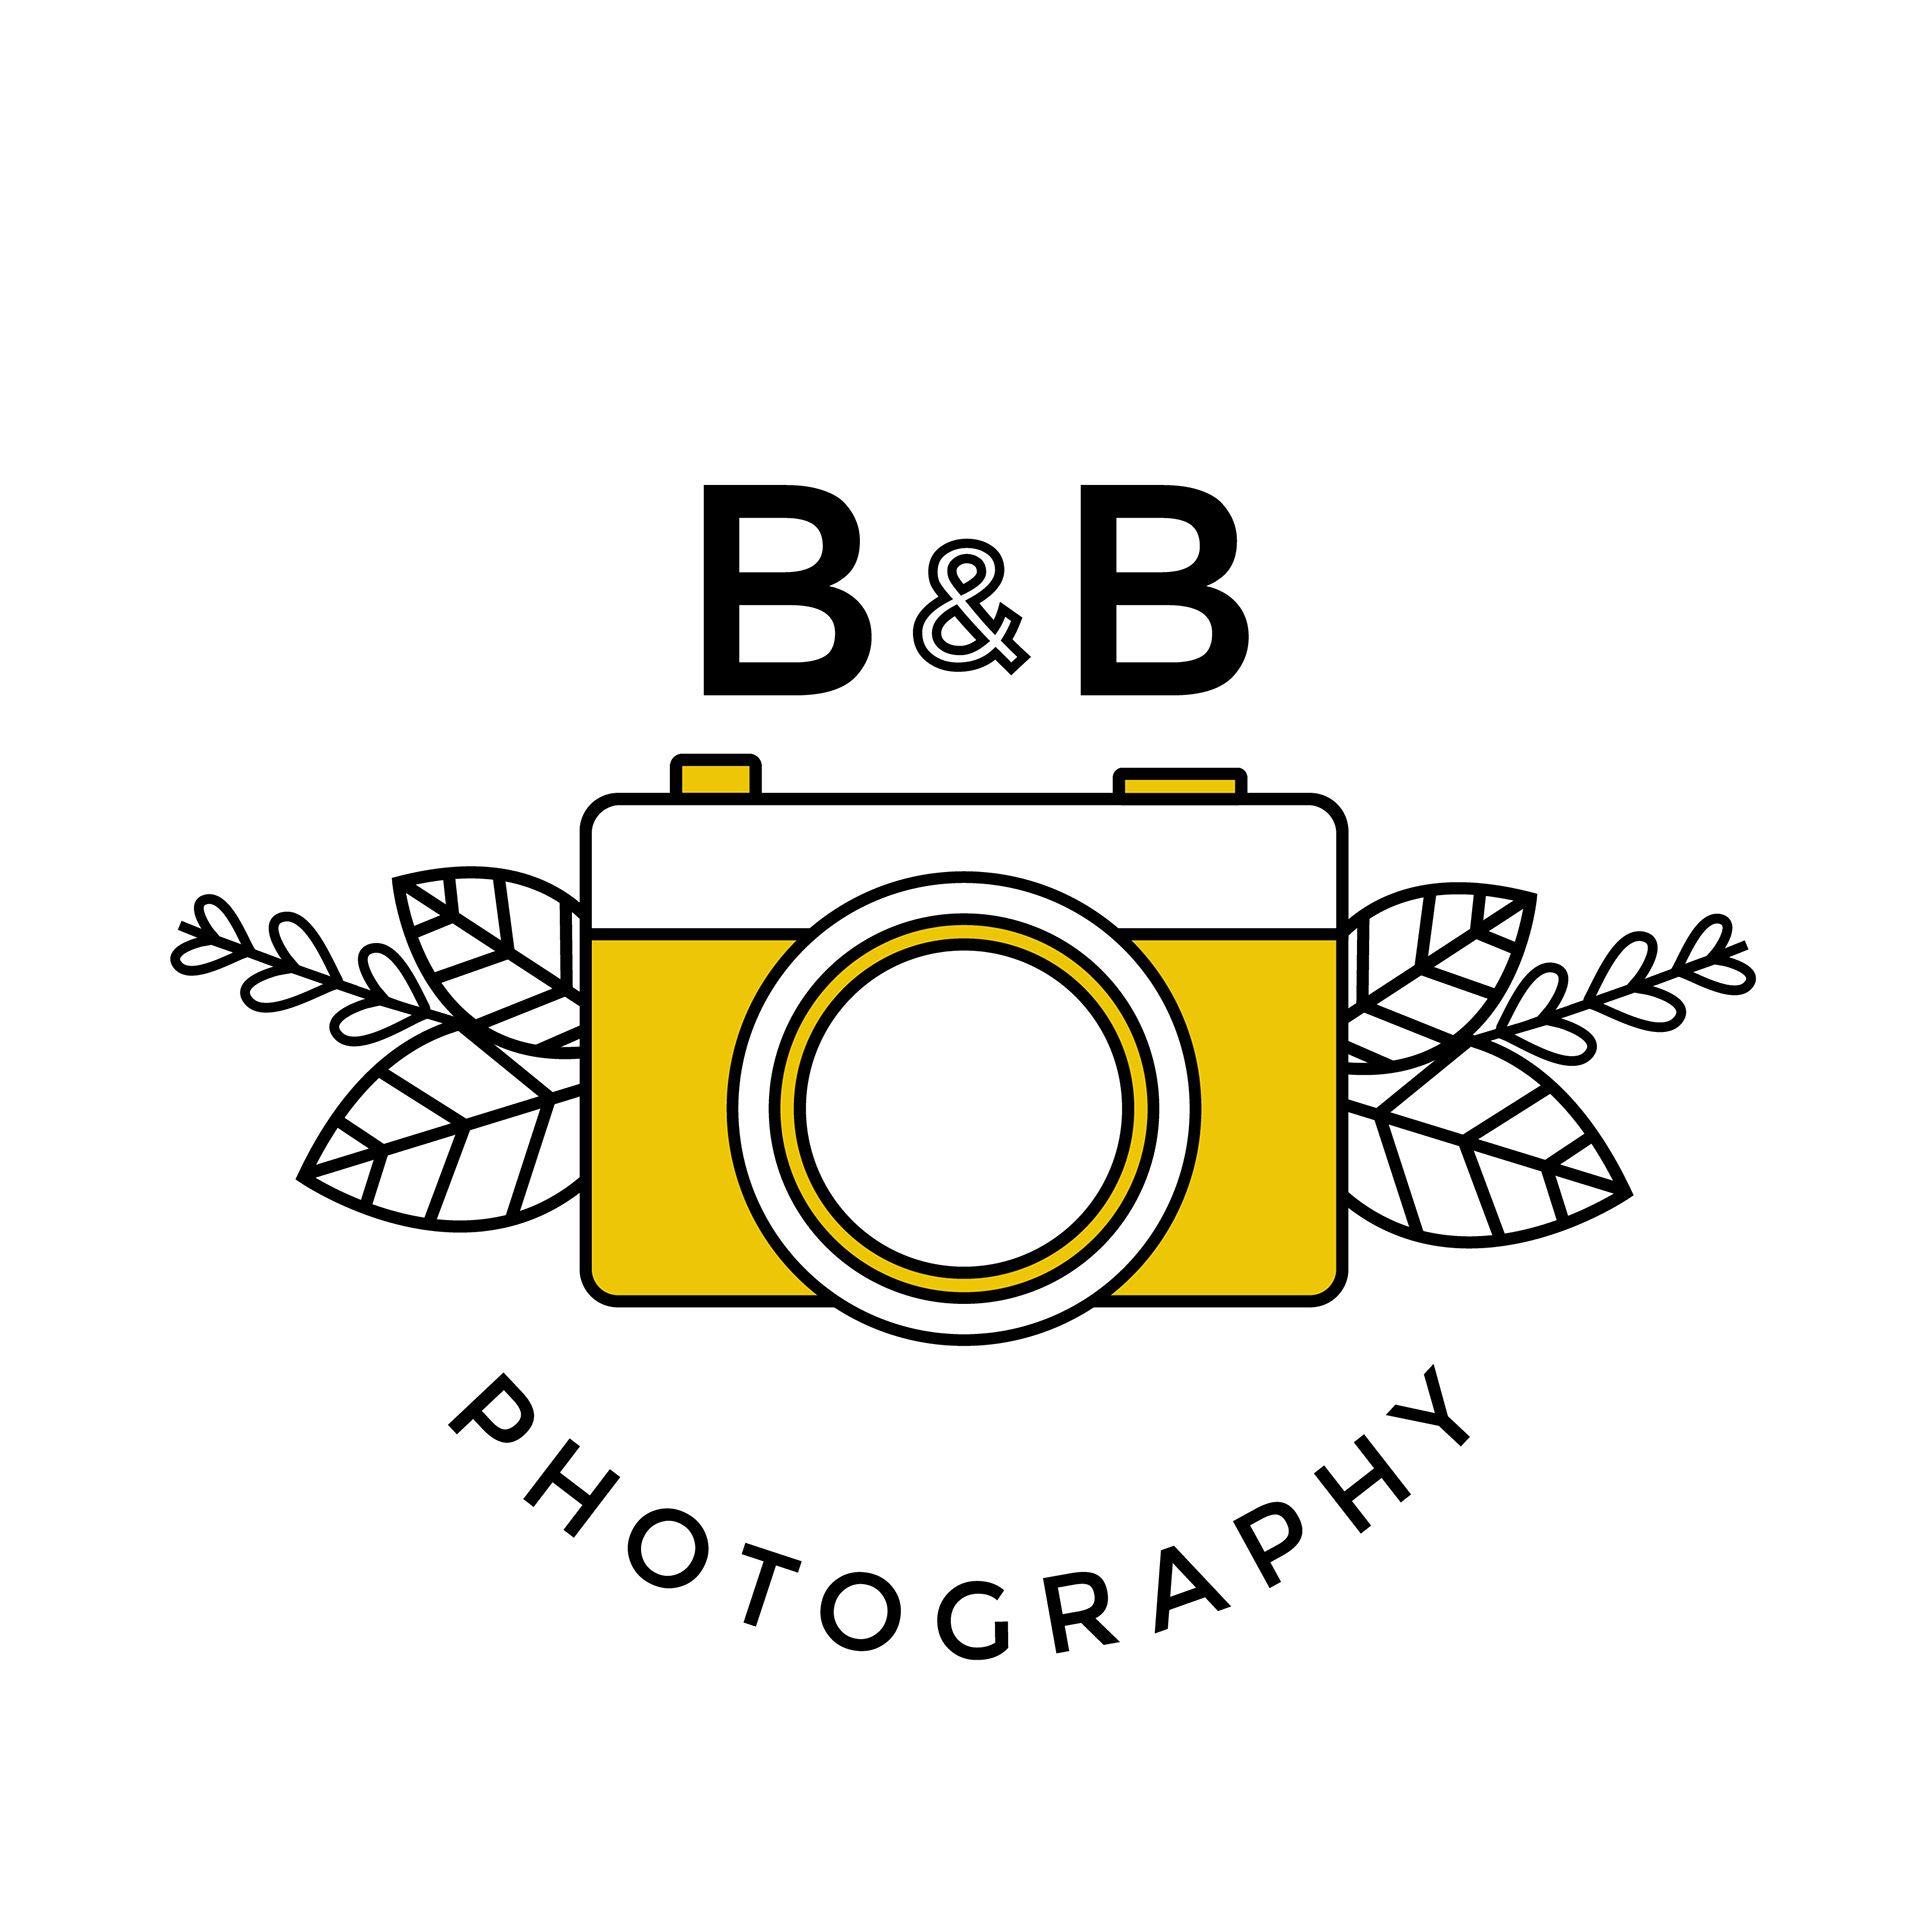 B and B in a Circle Logo - Randi Gilmore & B Photography Logo